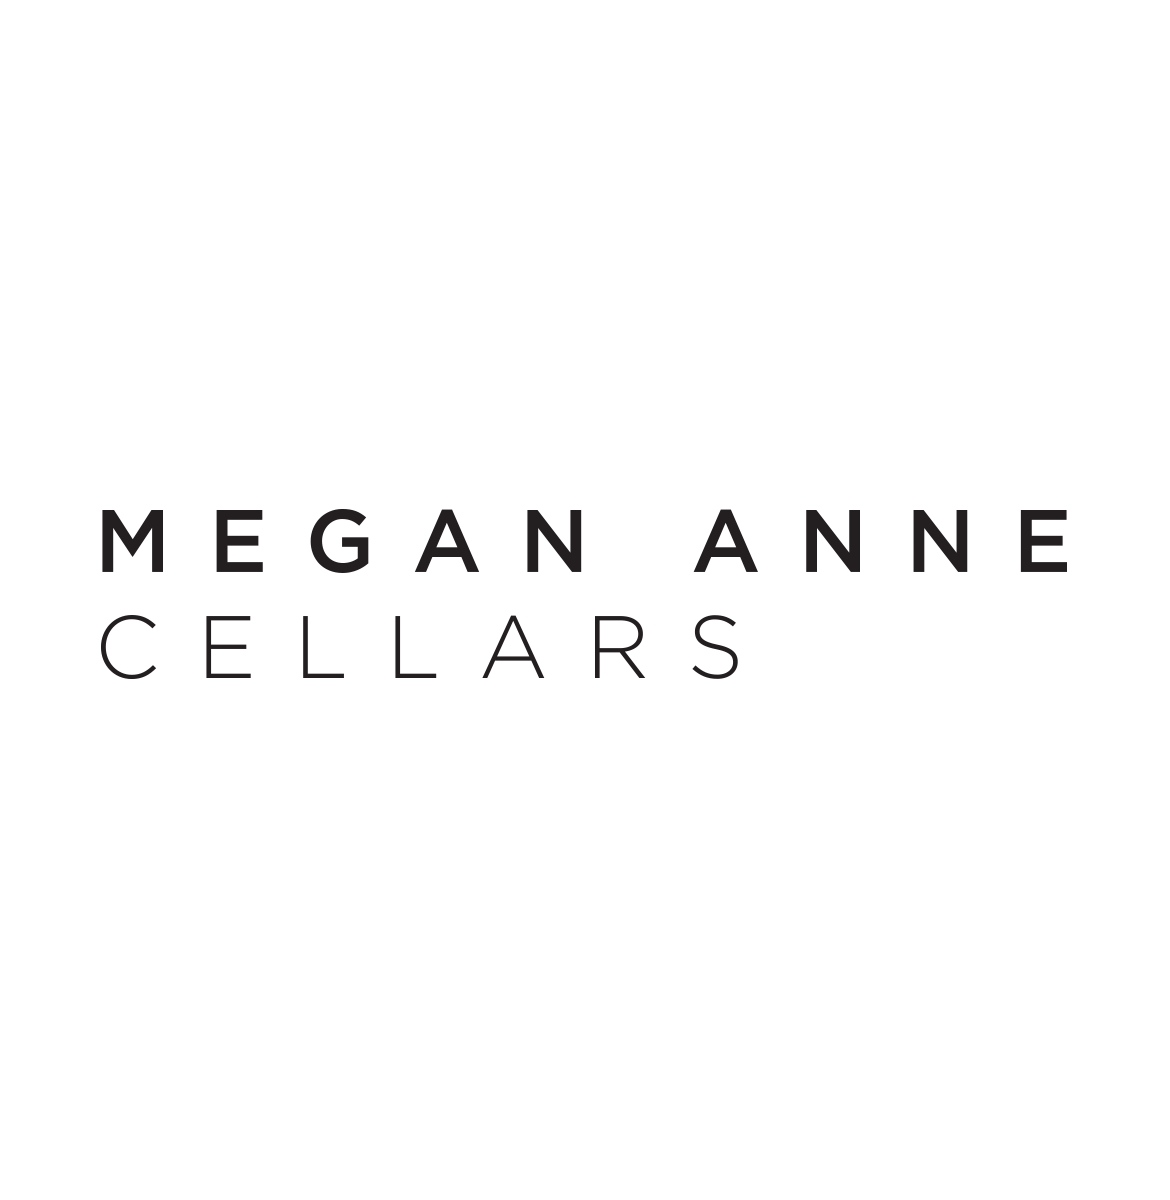 MeganAnne_LogoVariations_0006_Vector-Smart-Object.png